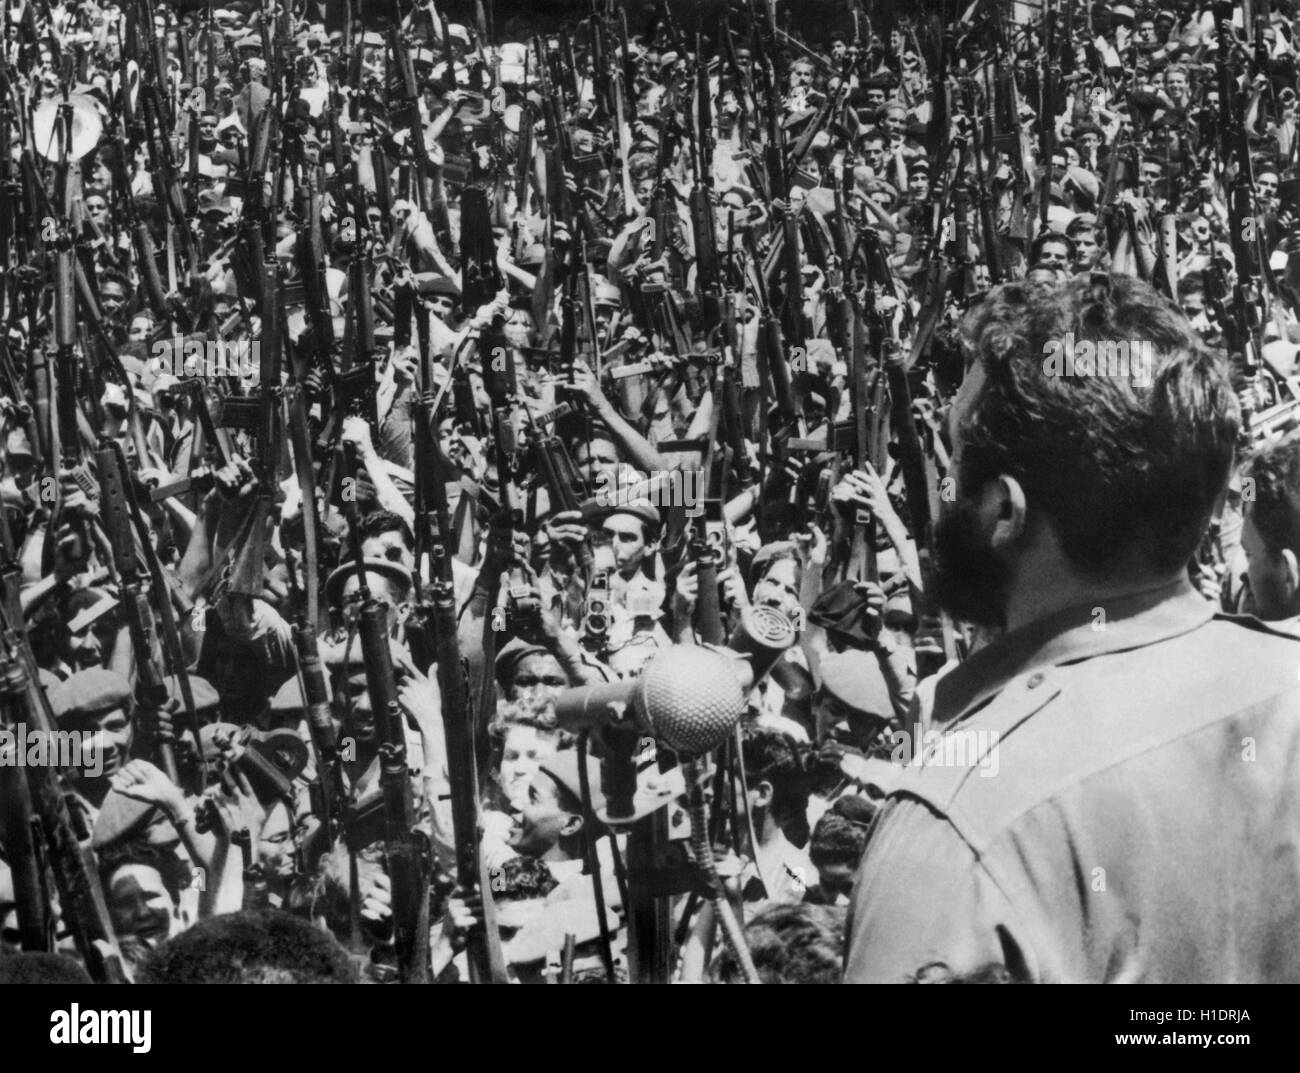 Leader de la révolution cubaine et le premier ministre Fidel Castro prononce un discours dans le centre de La Havane le 16 avril 1961 (la veille de l'US-sponsored Bay of pigs invasion) aux forces révolutionnaires. Photo par Raul Corrales. Banque D'Images